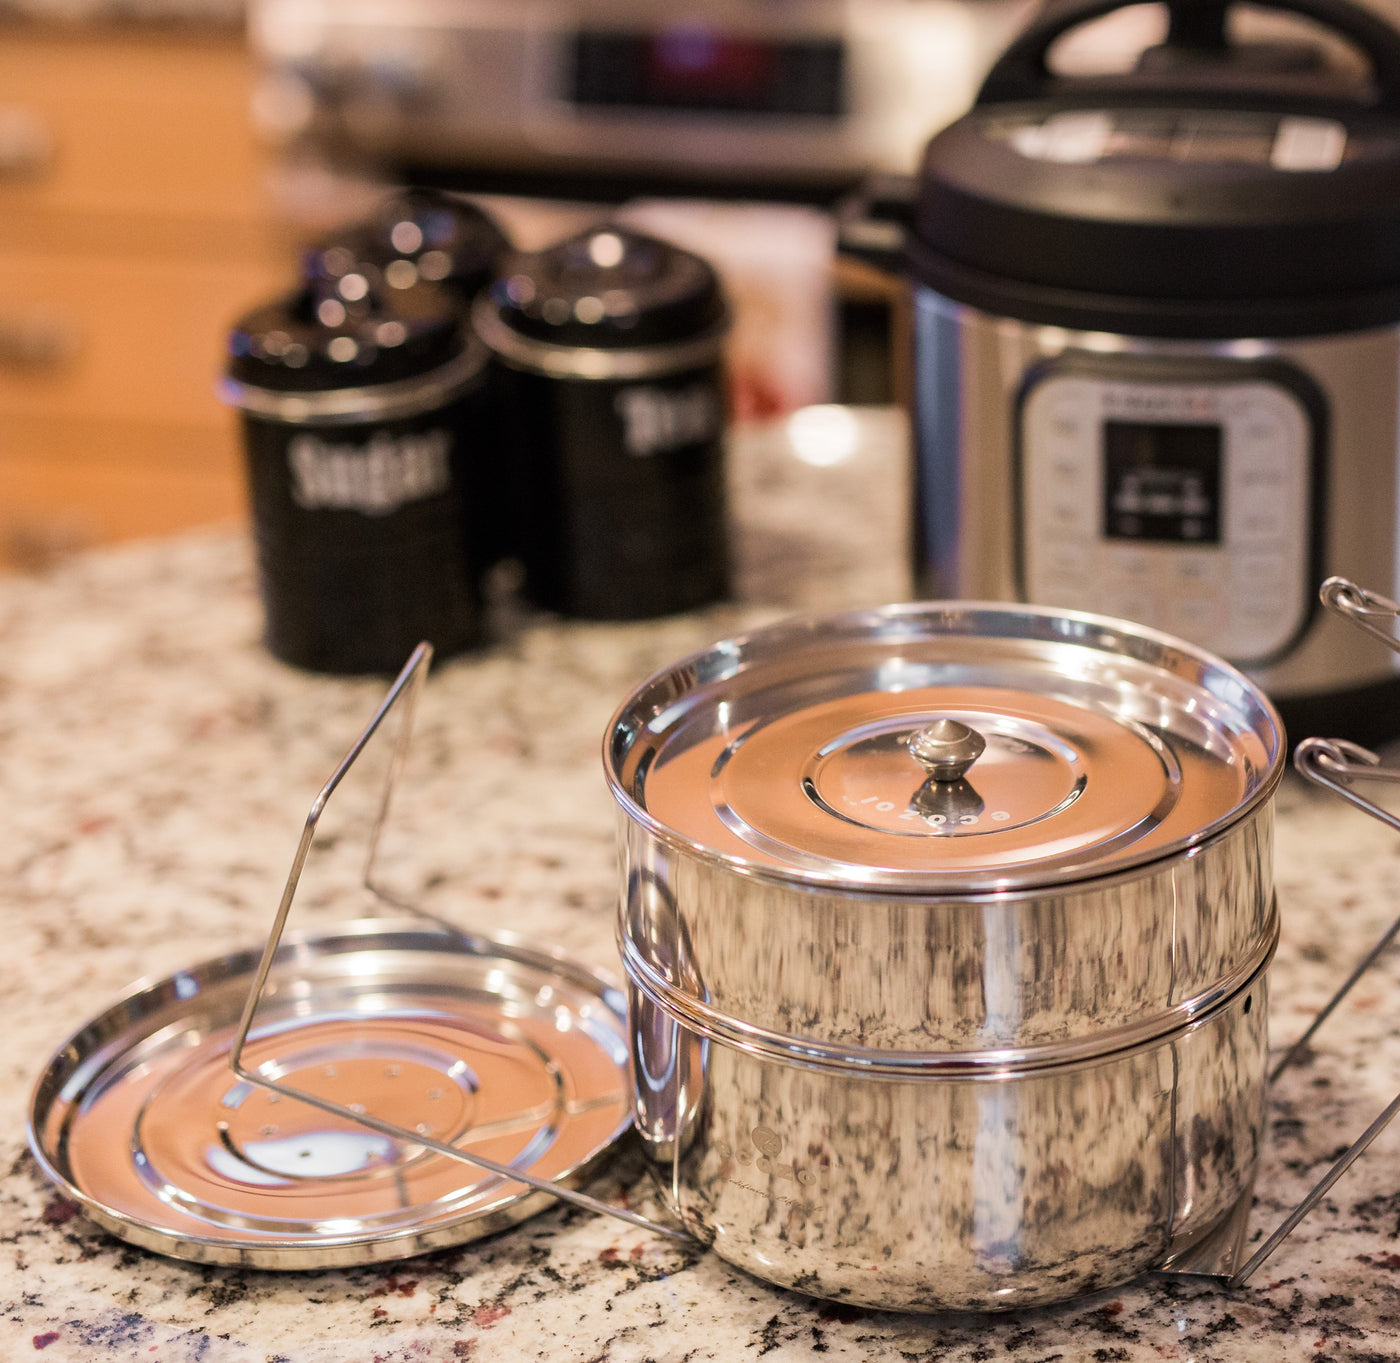 Instant Pot Insert Pans, 2 Tier for 3 Qt / 5 Qt Pressure Cookers